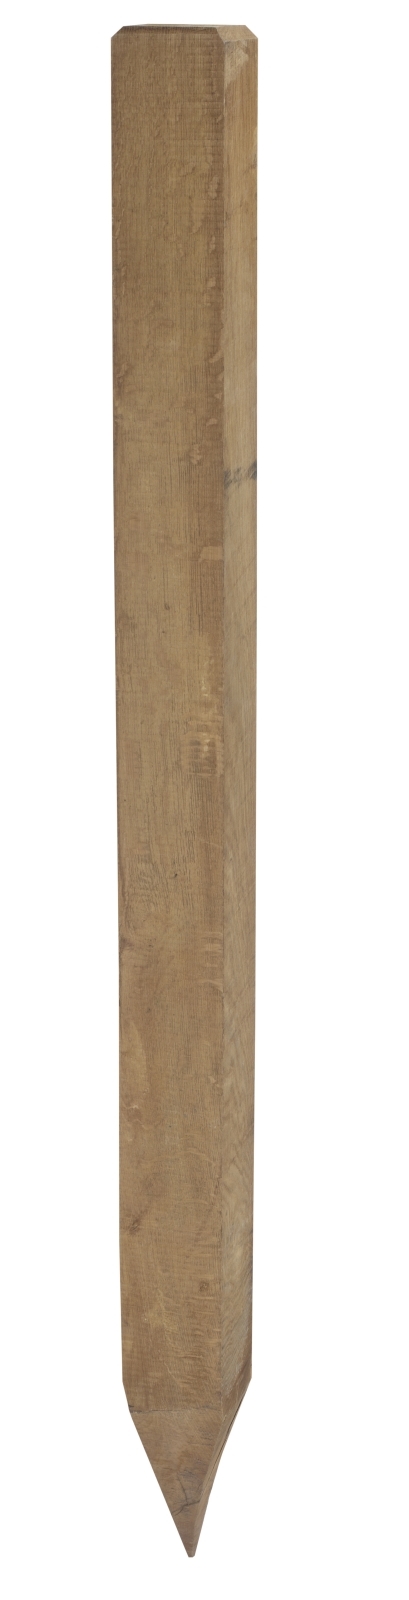 largeur 10 x 10 cm Poteaux en chêne Longueur 200 cm Poteaux en bois de chêne 